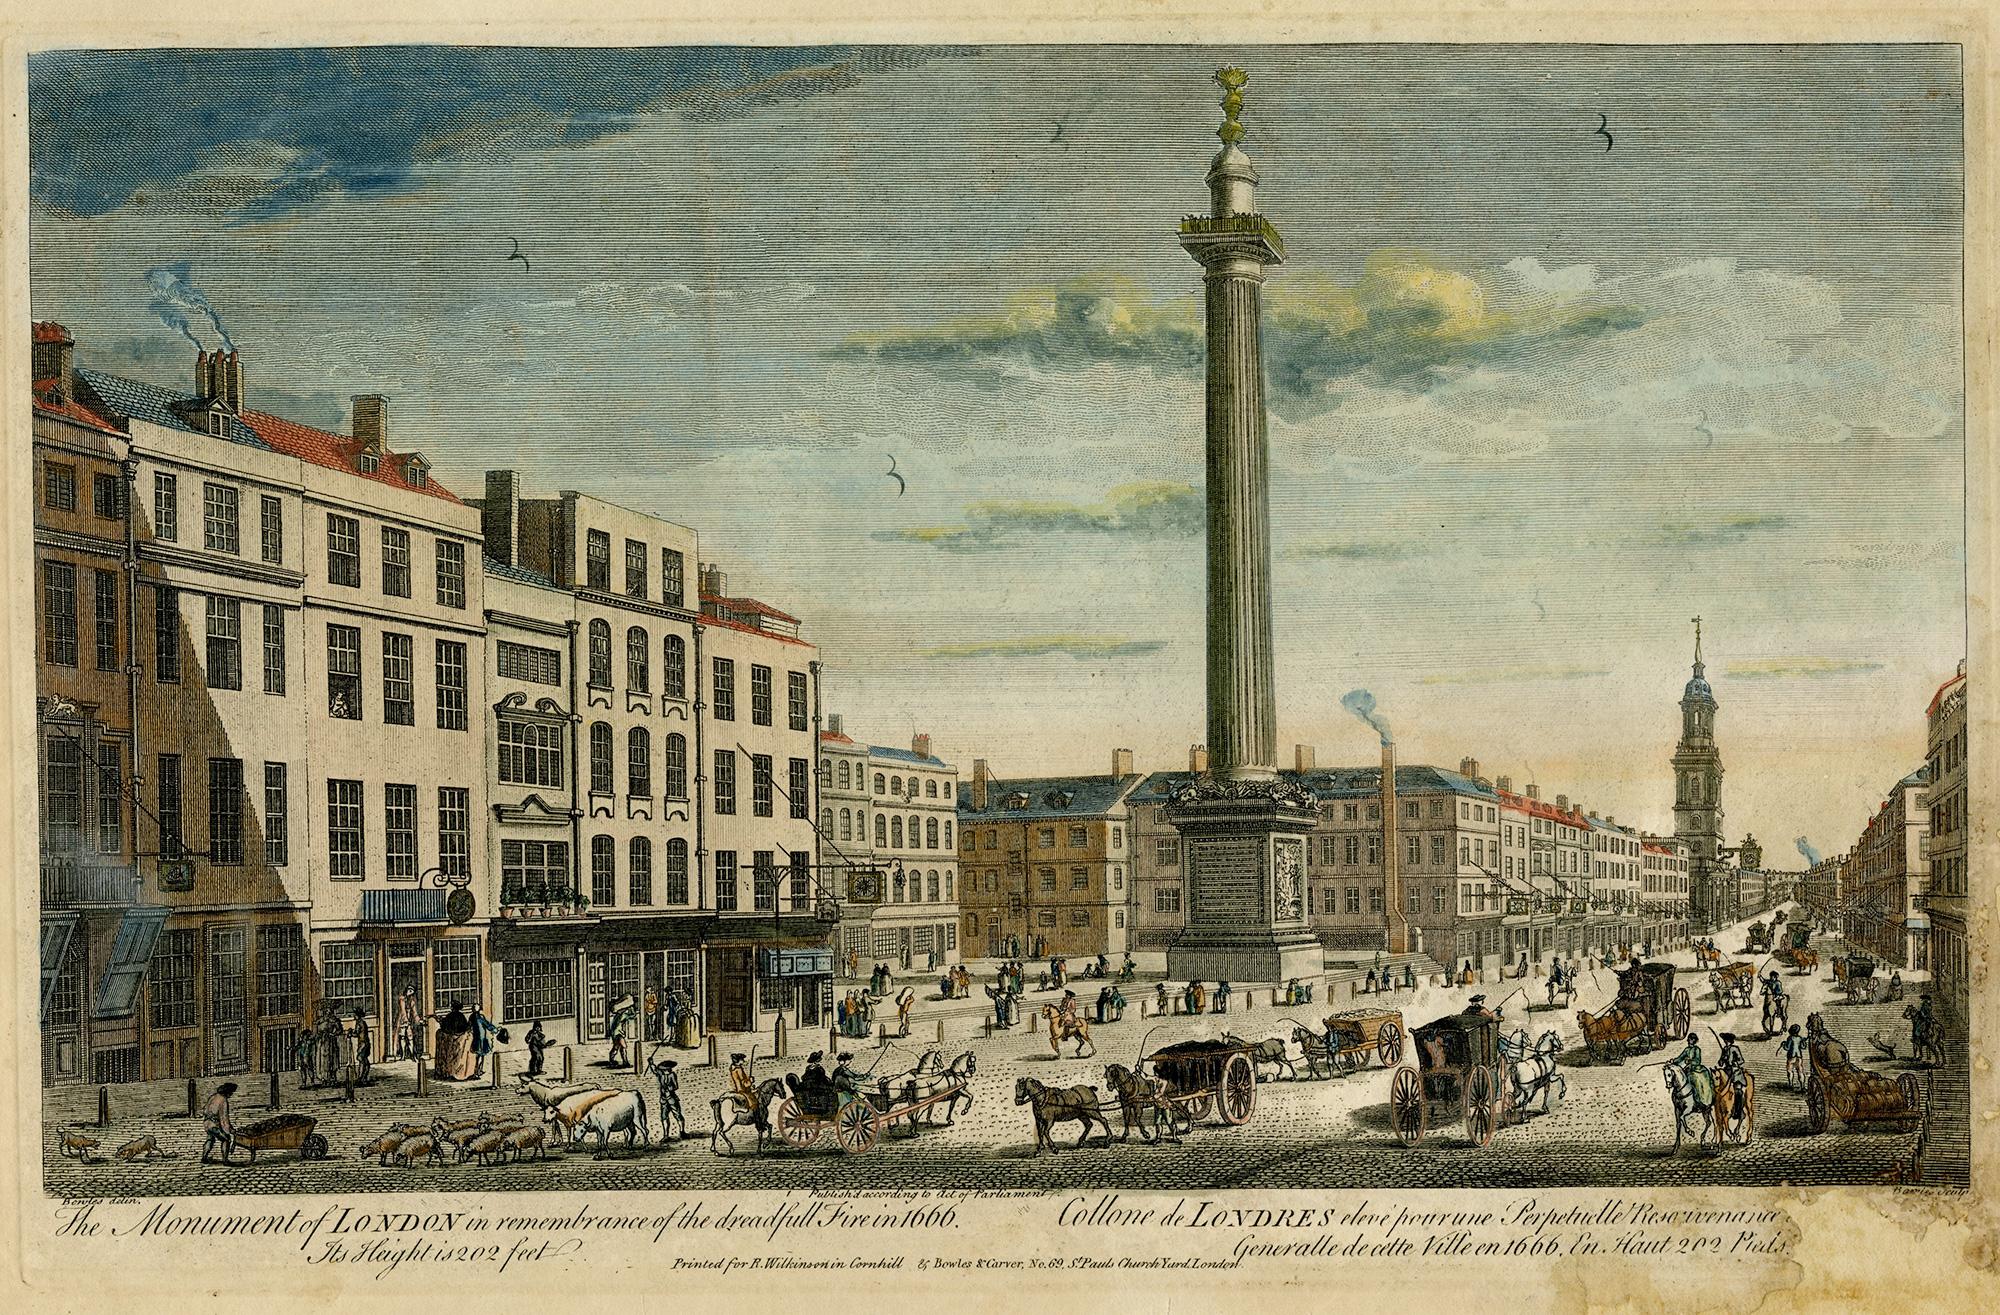 Thomas Bowles III Landscape Print – Das Monument von London im Gedenken an das Dreadful Fire von 1666